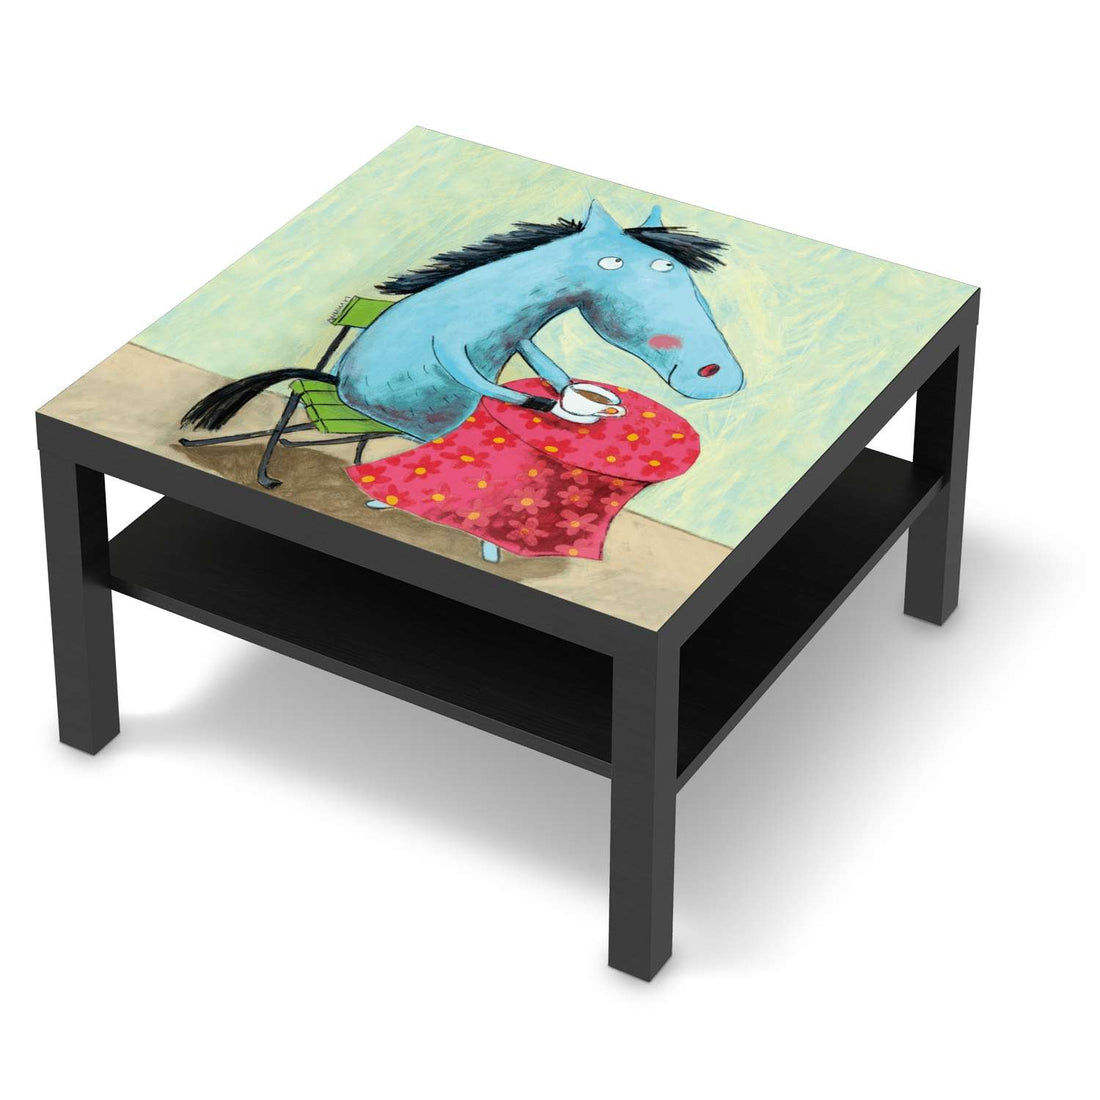 Selbstklebende Folie Pferd - IKEA Lack Tisch 78x78 cm - schwarz